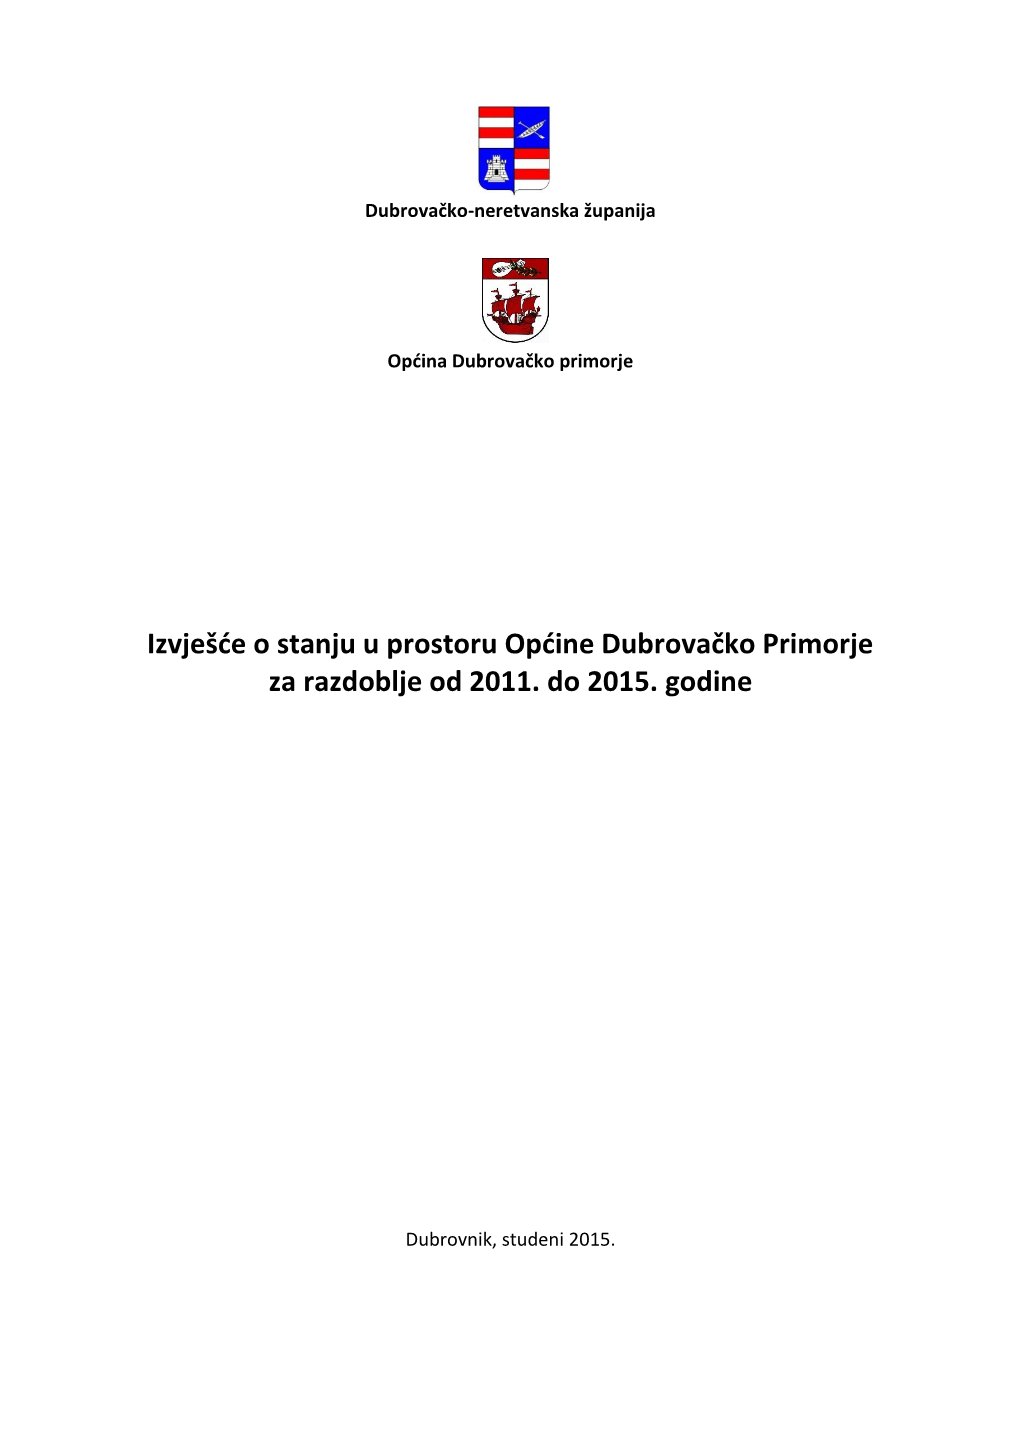 Izvješće O Stanju U Prostoru Općine Dubrovačko Primorje Za Razdoblje Od 2011